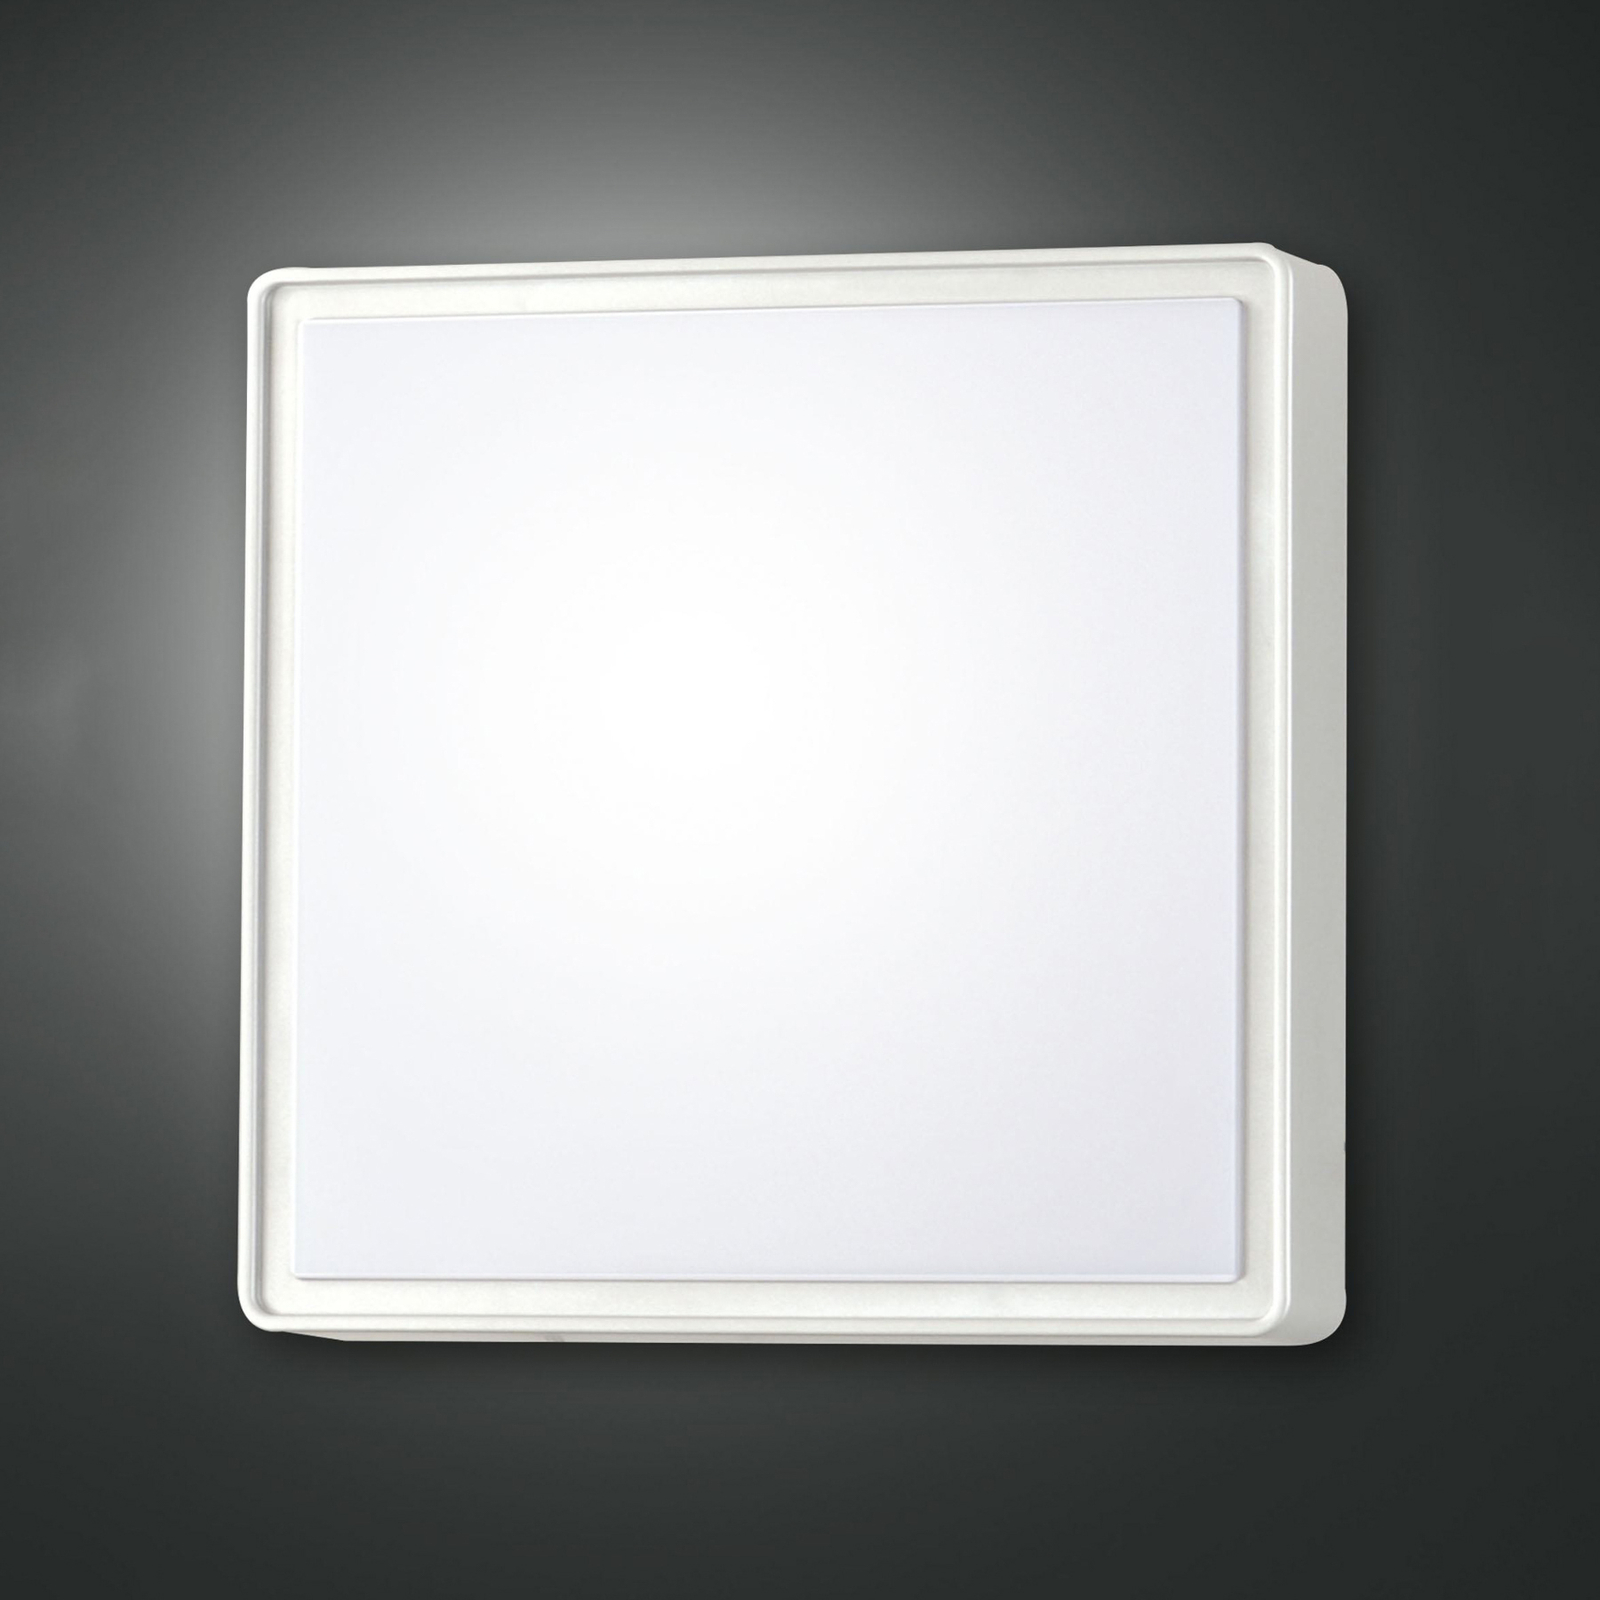 Aplique de pared Oban, 30 cm x 30 cm, sensor, 2 x E27, blanco, IP65